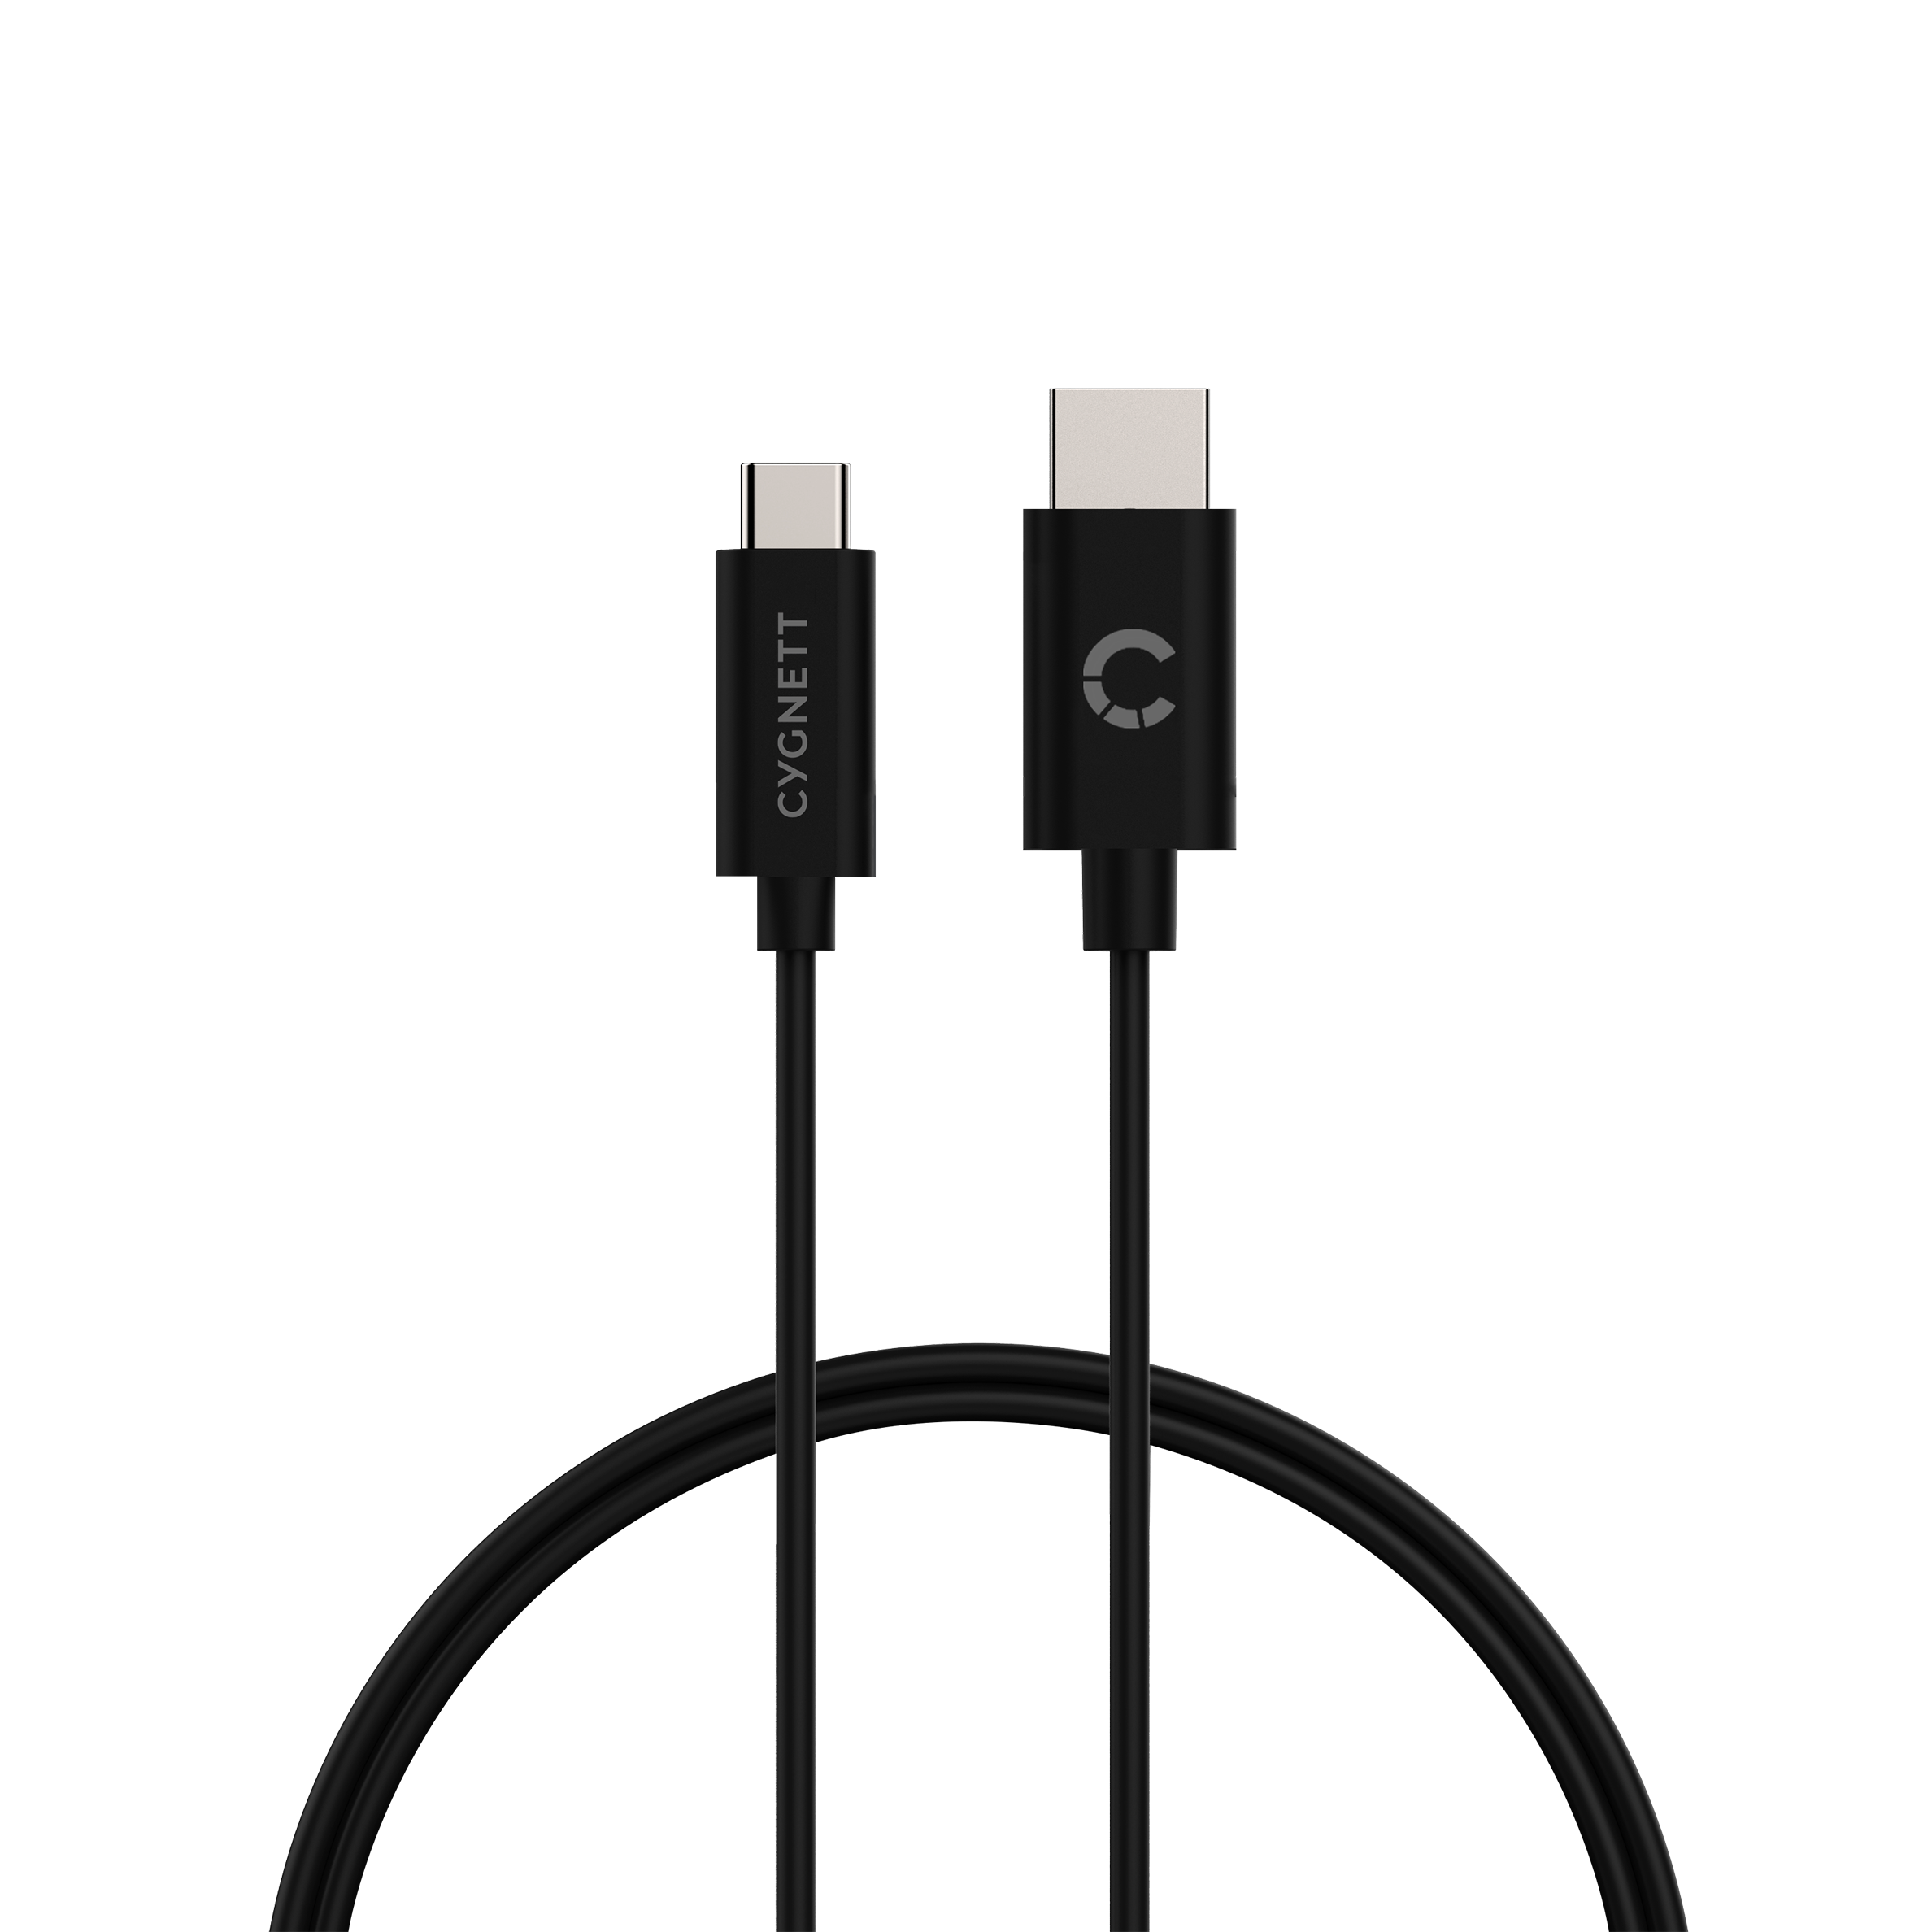 USB-C to HDMI Cable 1.8m - Black - Cygnett (AU)